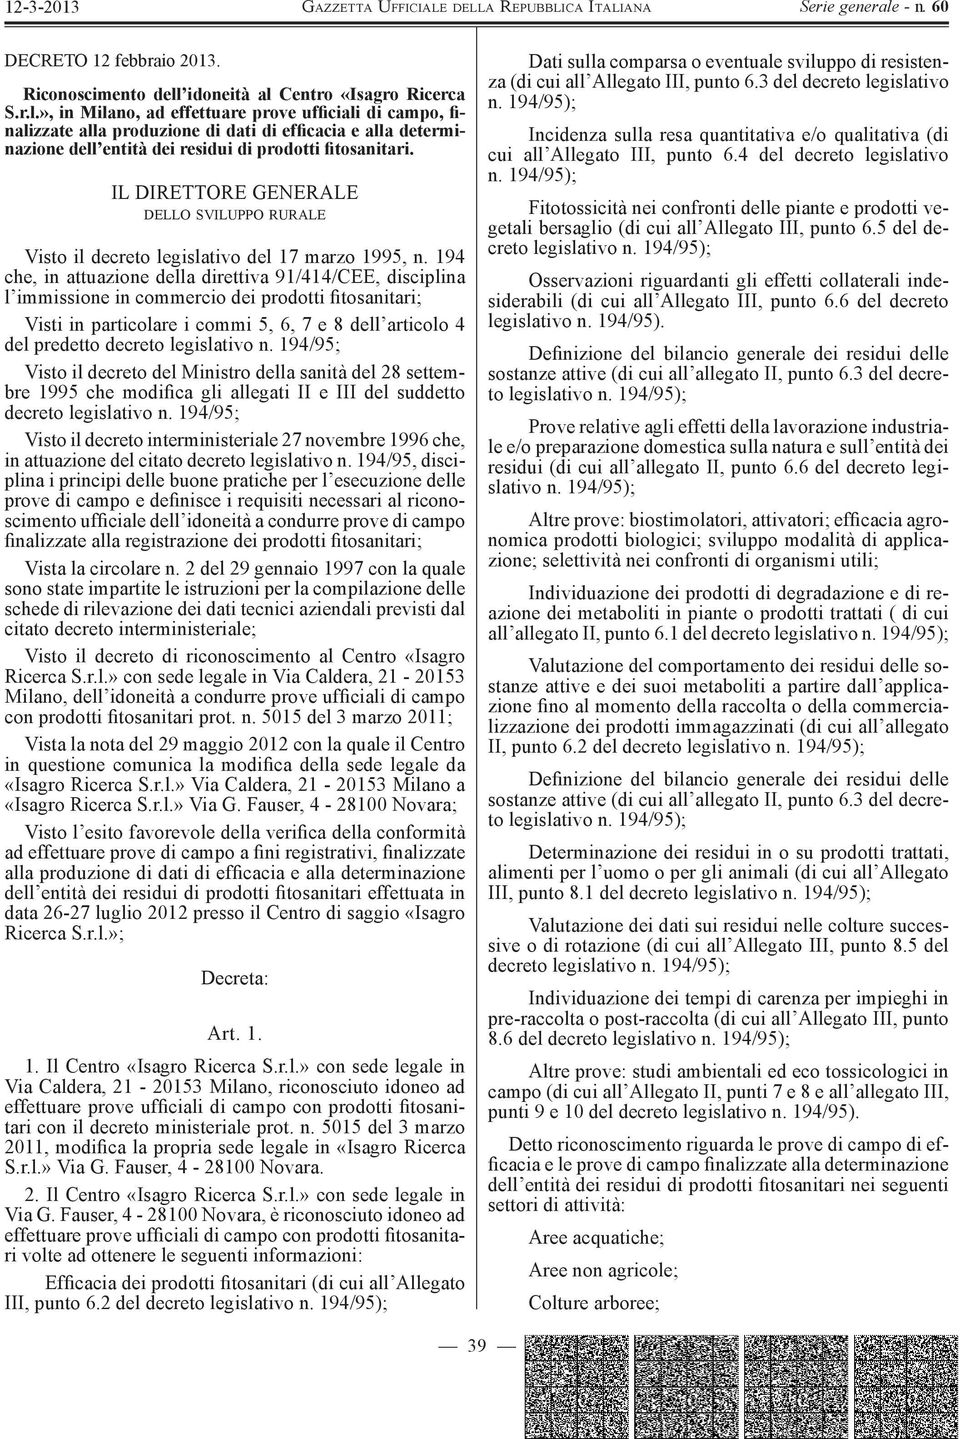 194/95; Visto il decreto interministeriale 27 novembre 1996 che, in attuazione del citato decreto legislativo n.